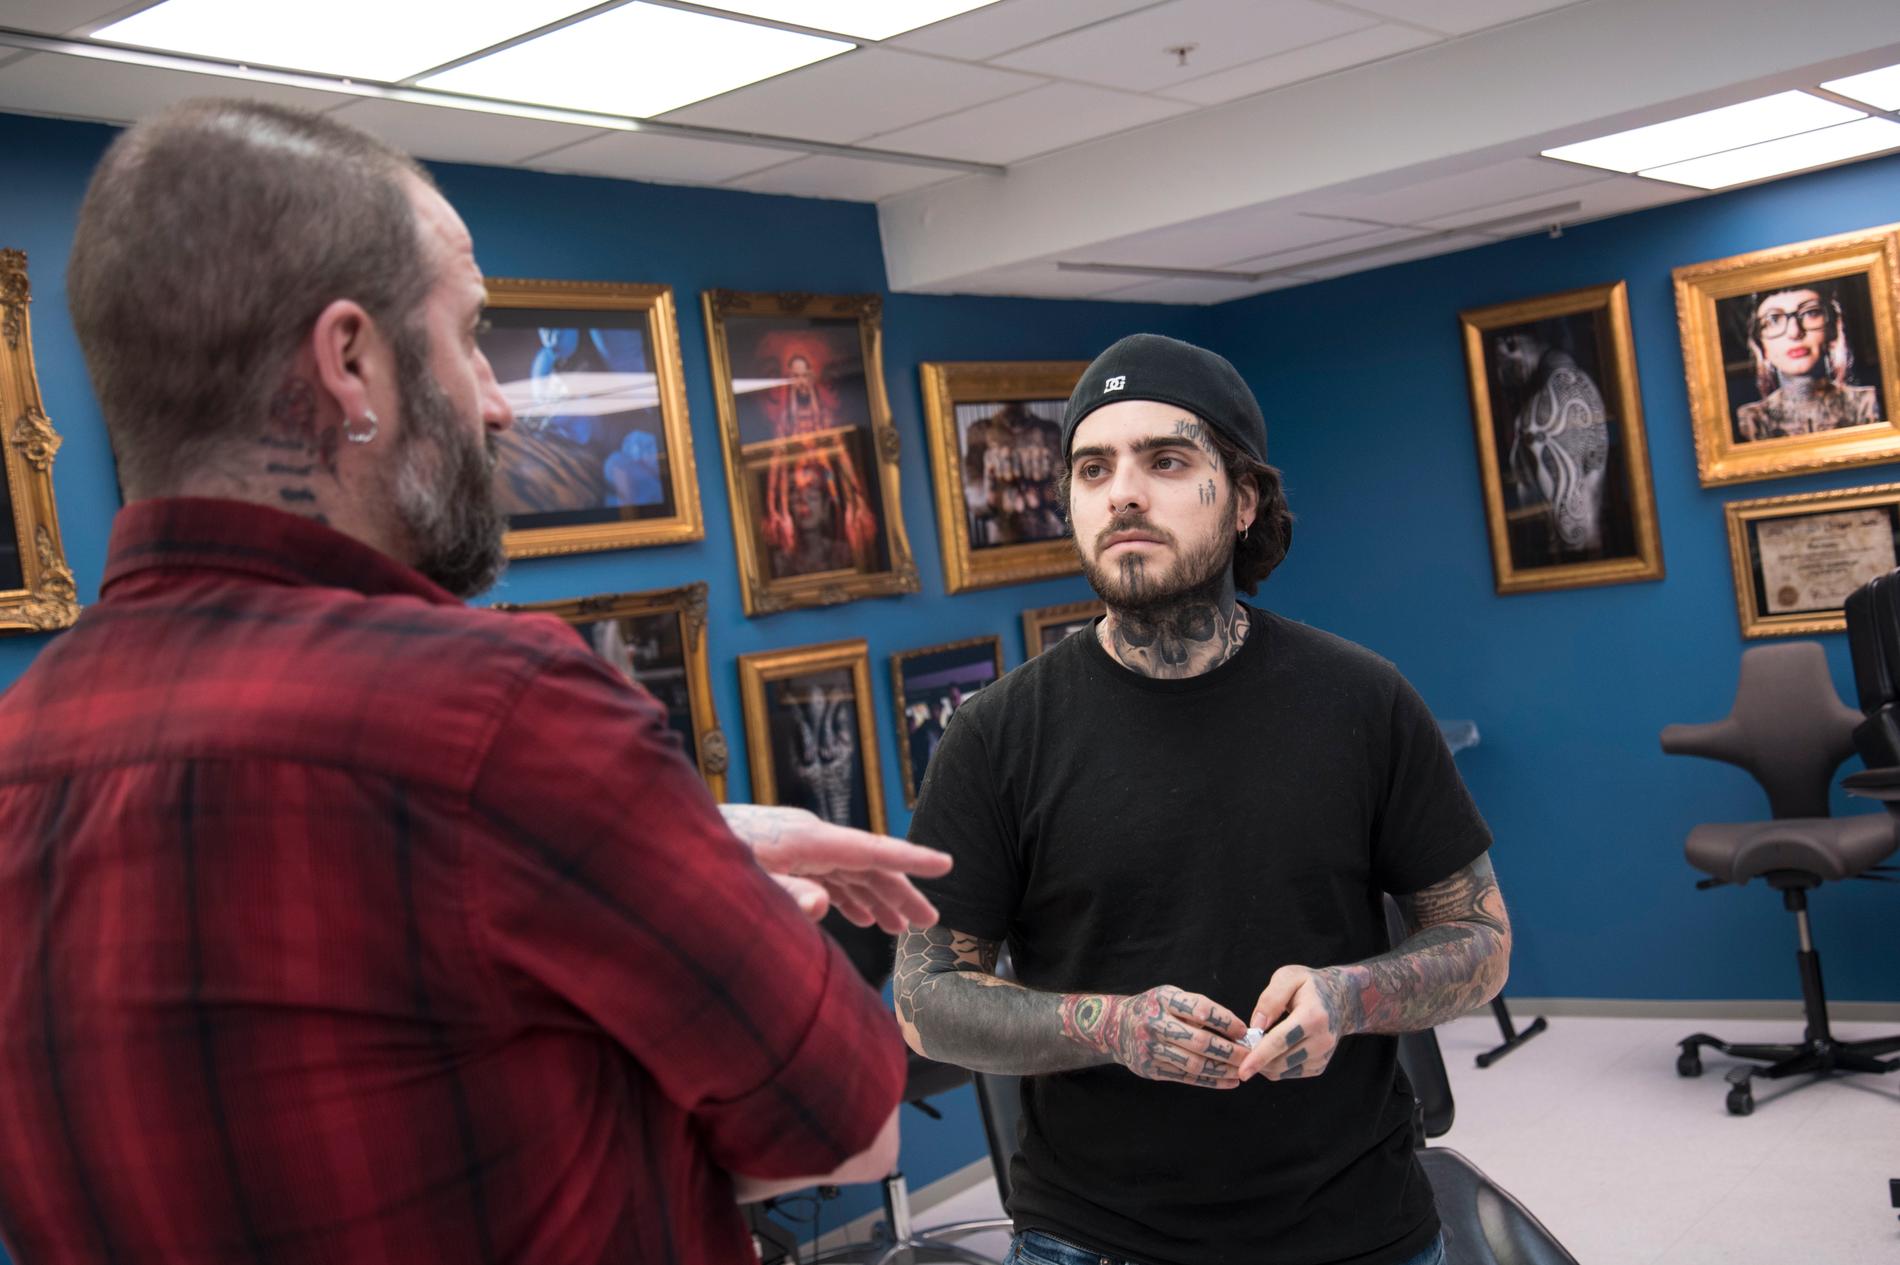 Luis Rachello har drevet tatoveringsstudioet Royals i Søregata i tre år. Hvis han skal velge en tatovering han tror er tidløs, så blir det rosen. Den ser fin ut, og kan komme i mange størrelser og fasonger.